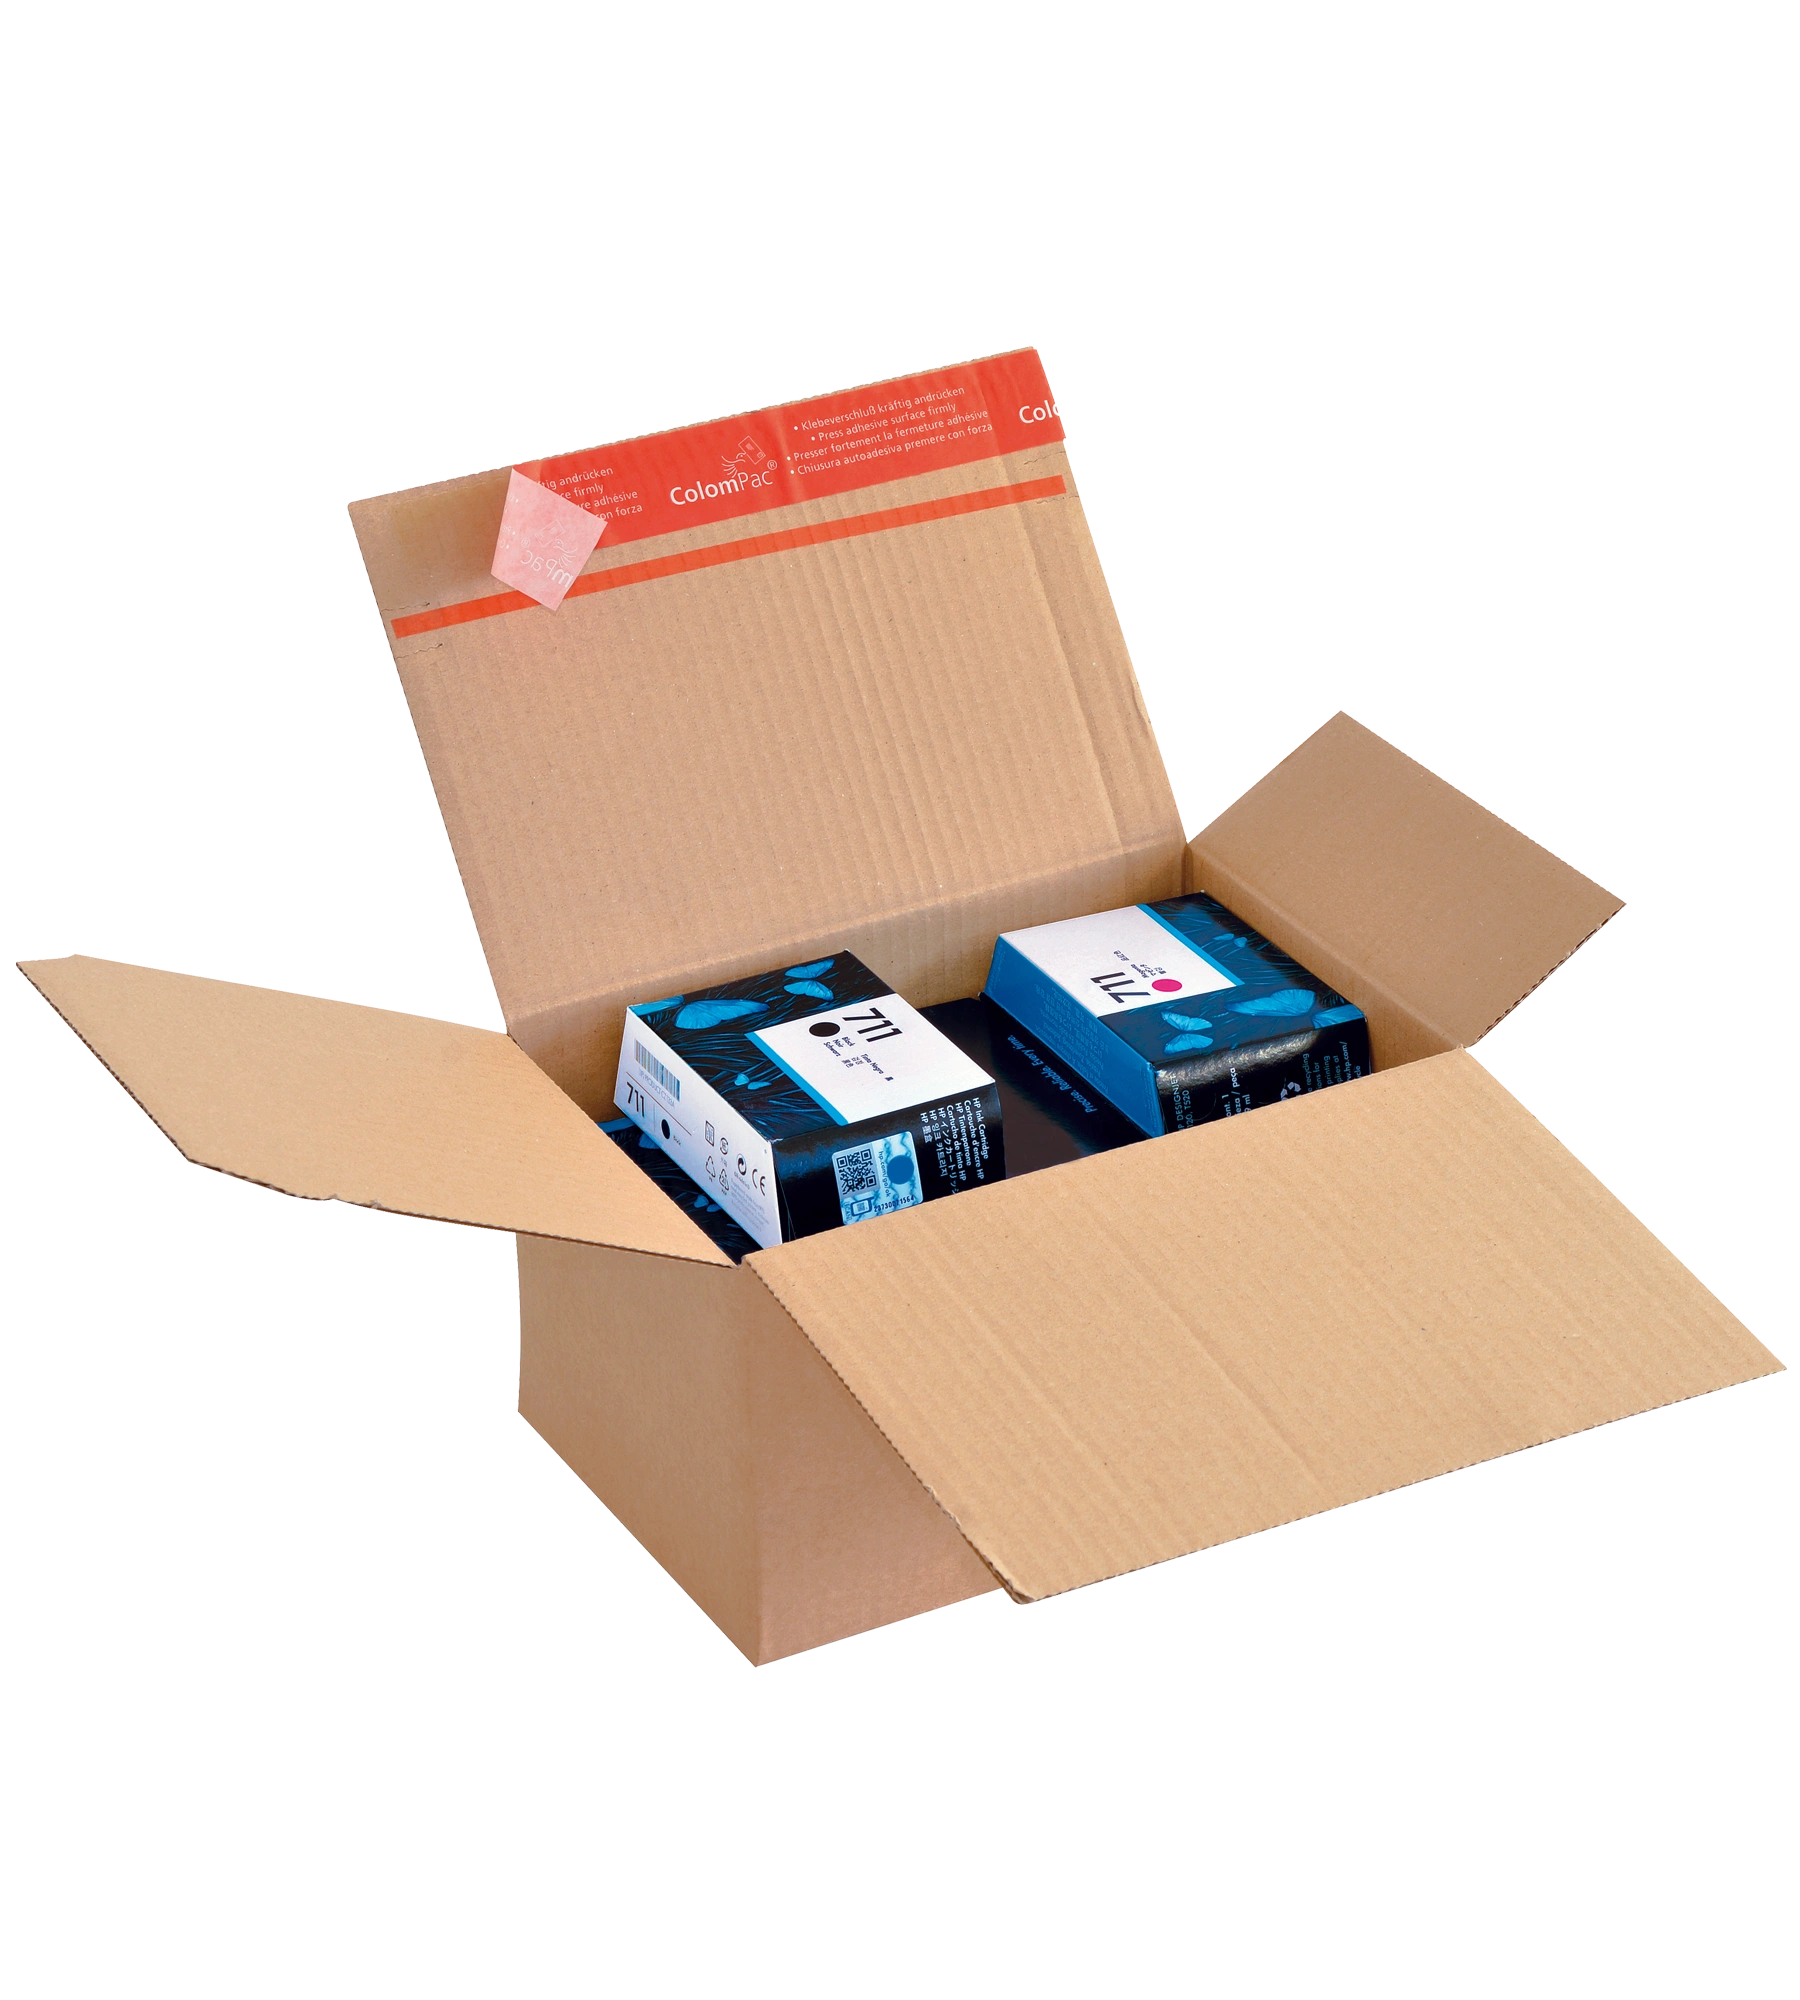 Cajas de Cartón con Altura Variable para Envíos y Mudanza